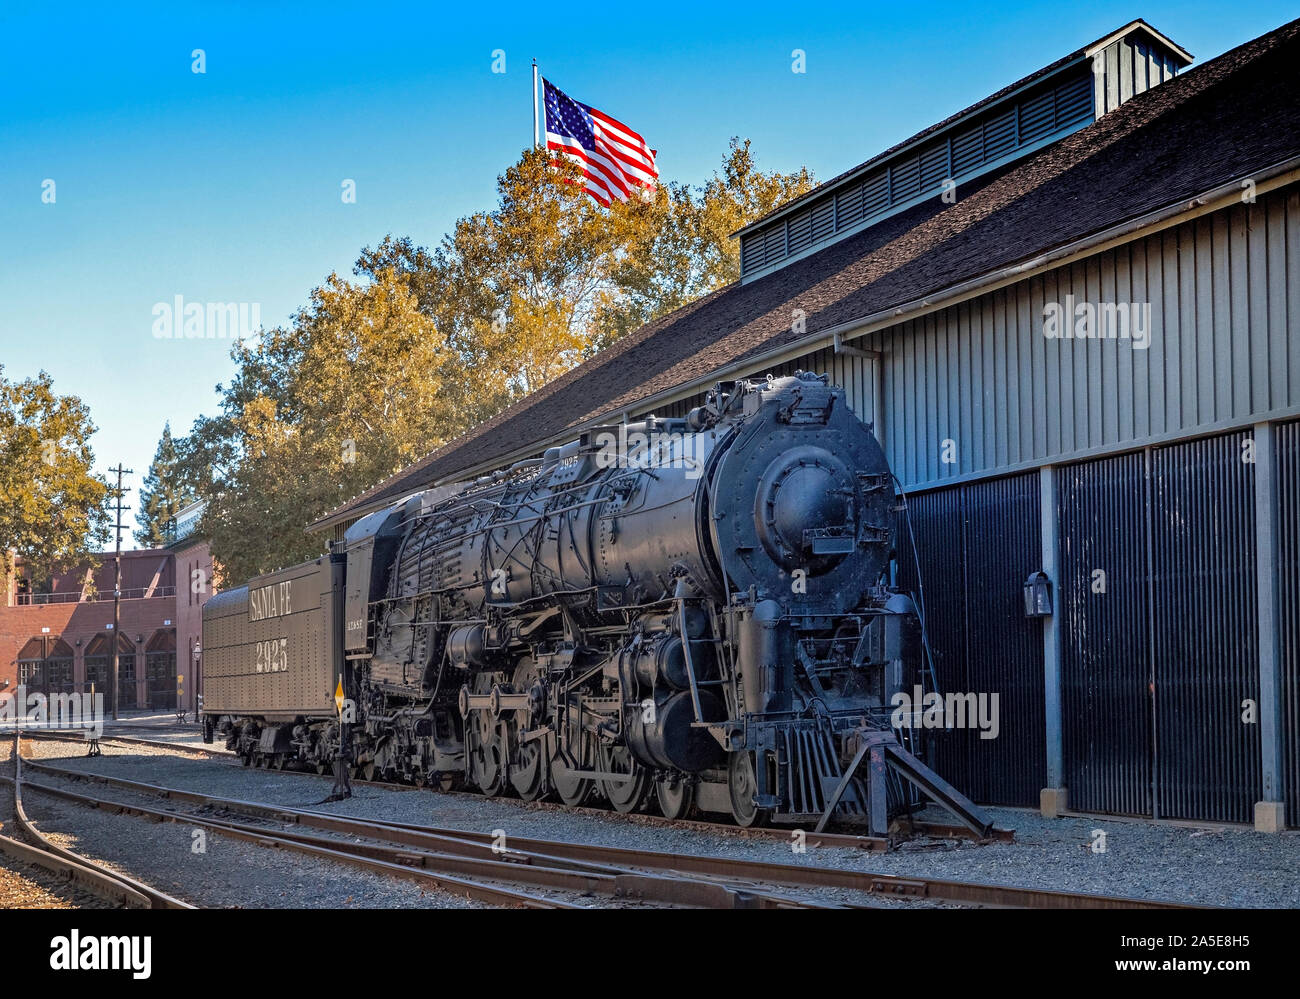 Santa Fe de la locomotive à vapeur Banque D'Images